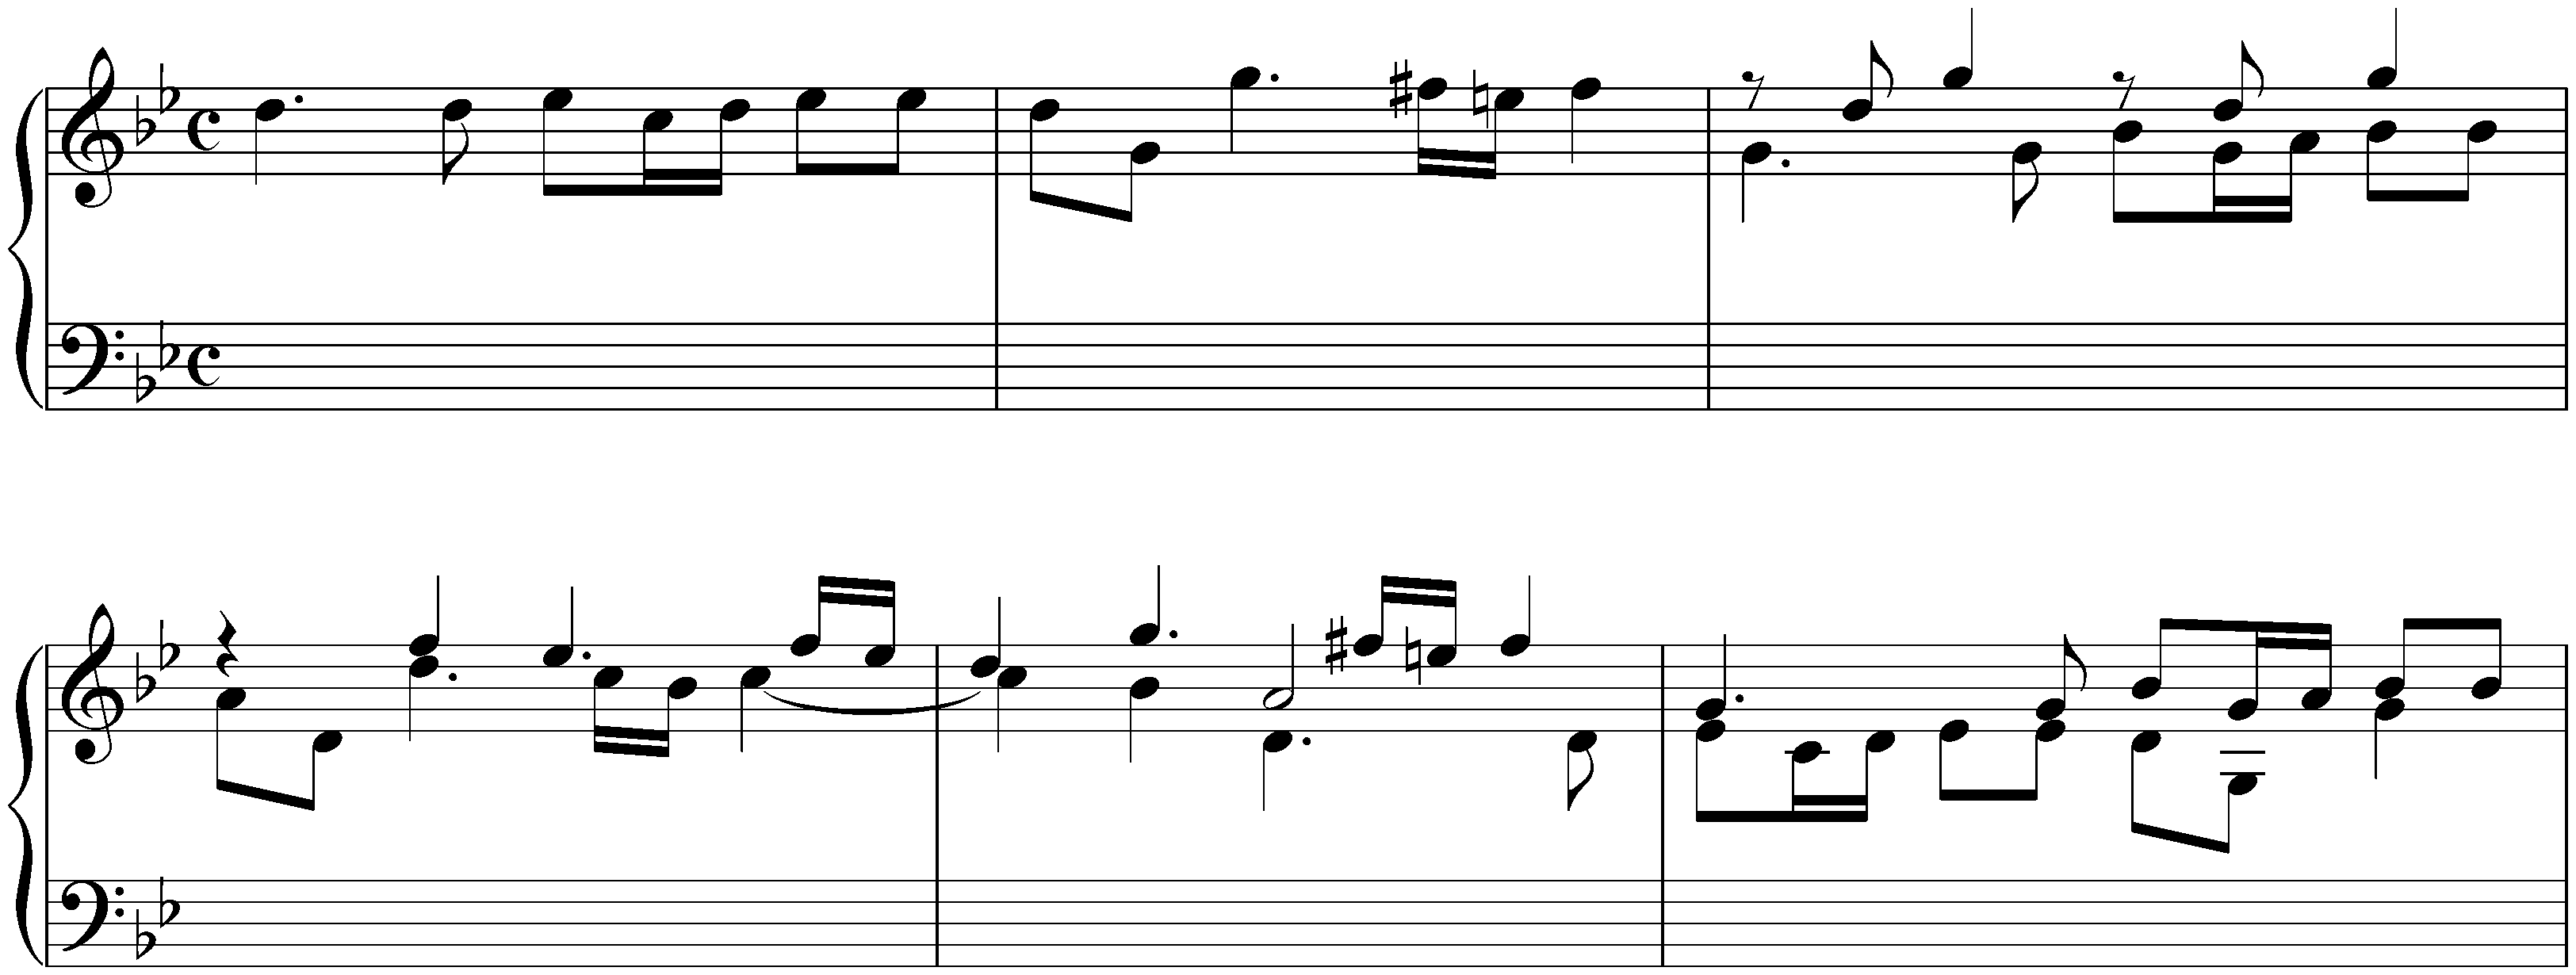 Sonatas found in Bologna; 1. G minor